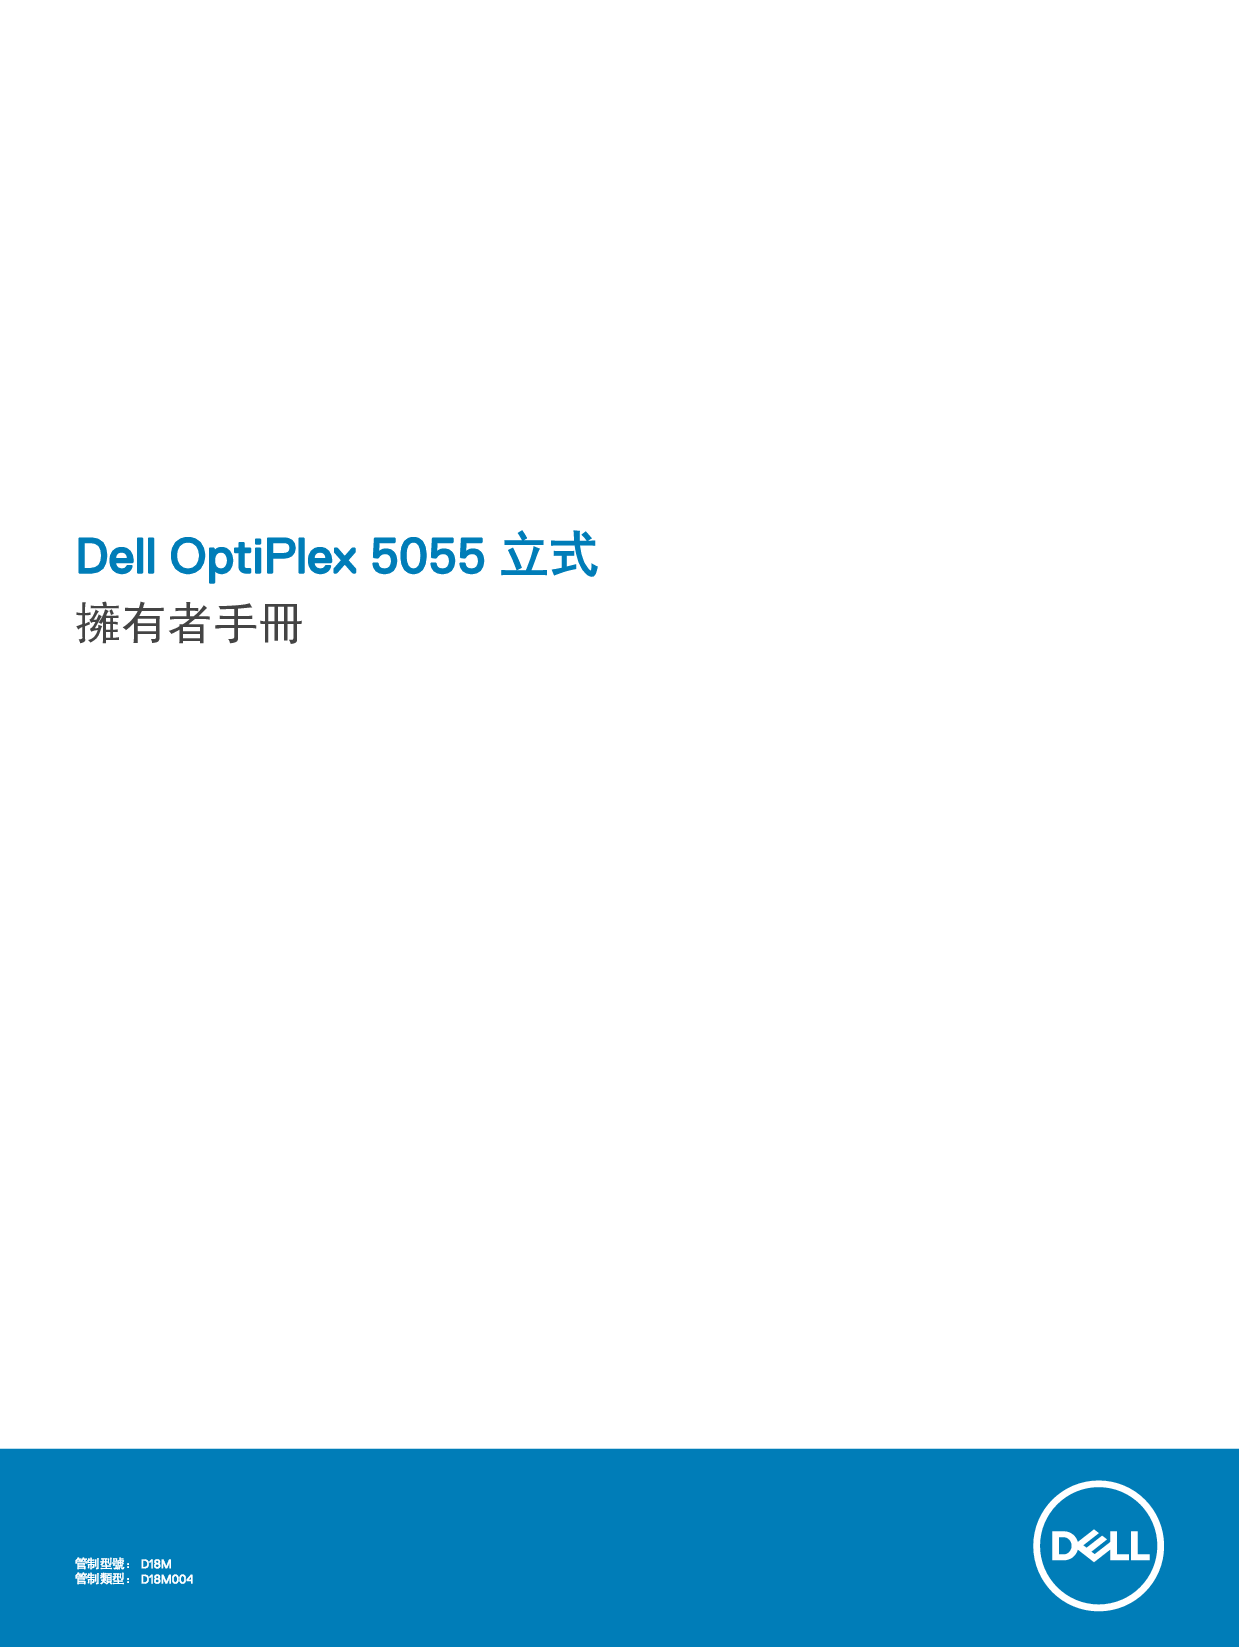 戴尔 Dell Optiplex 5055 A系列 塔式 繁体 用户手册 封面